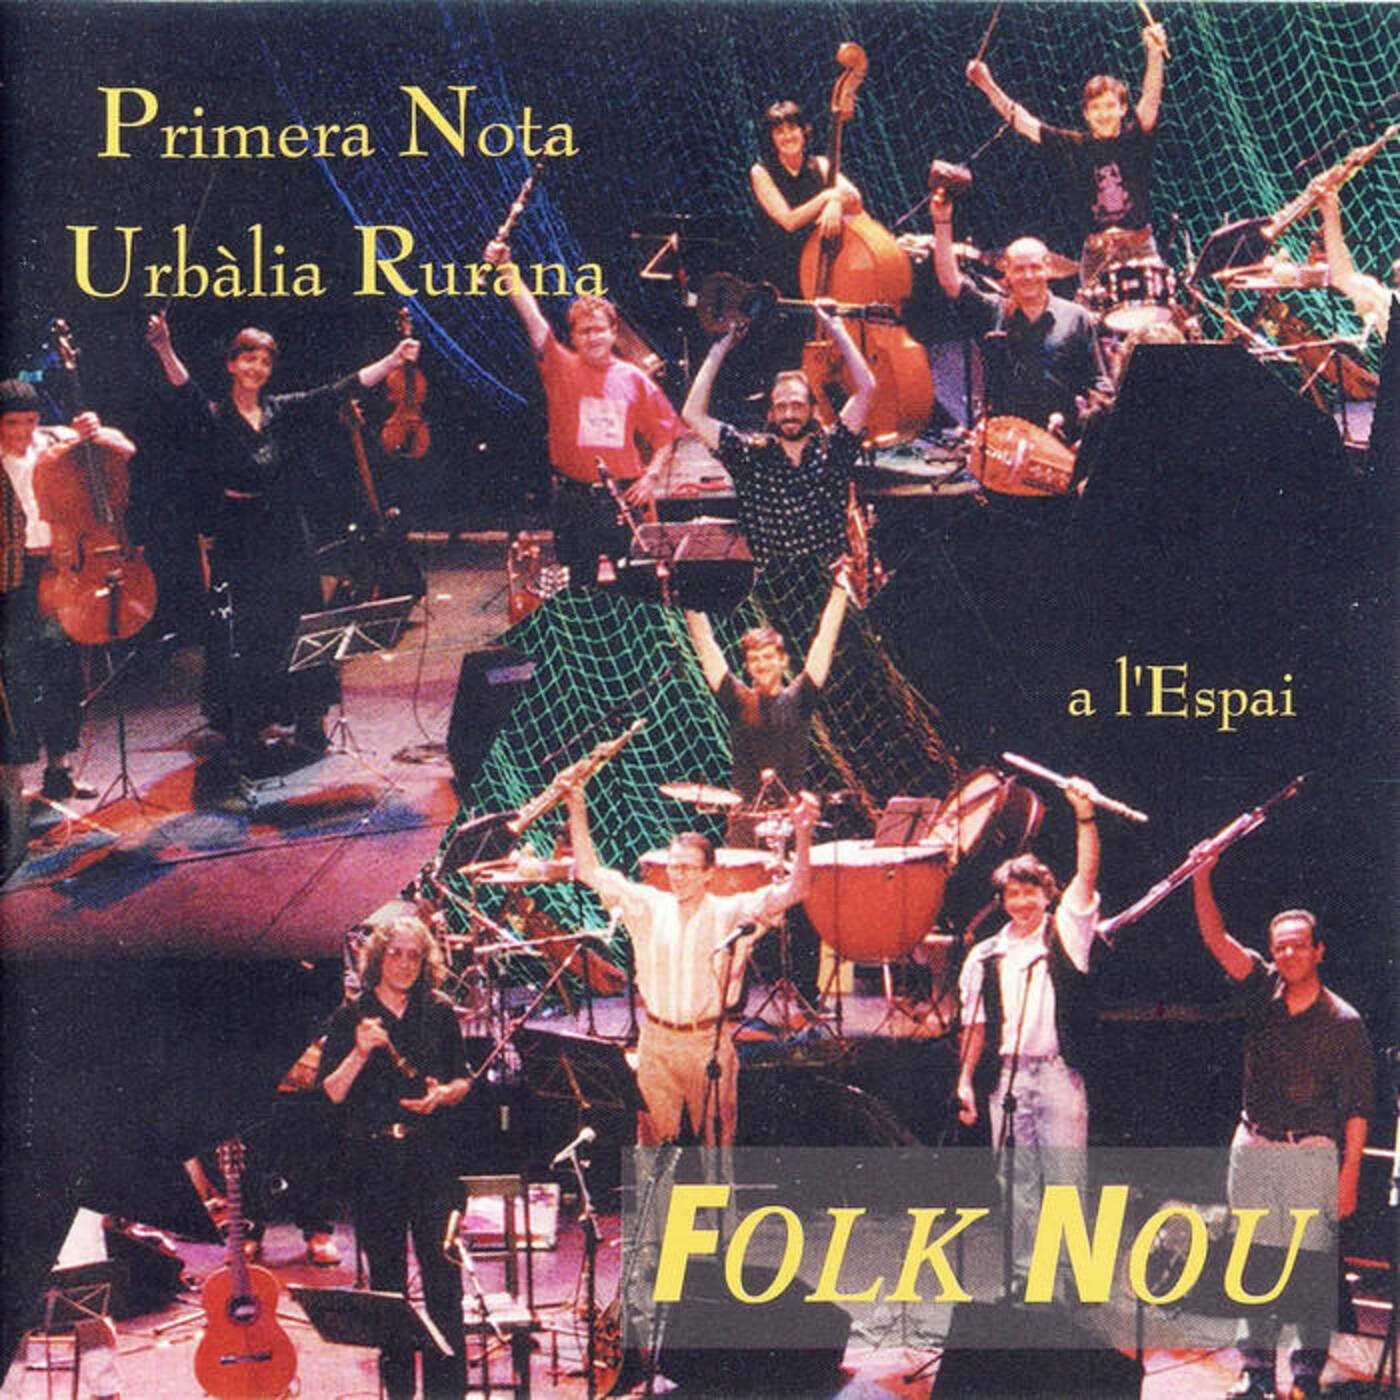 Urbàlia Rurana - Folk nou (amb Primera Nota) | musica en valencià